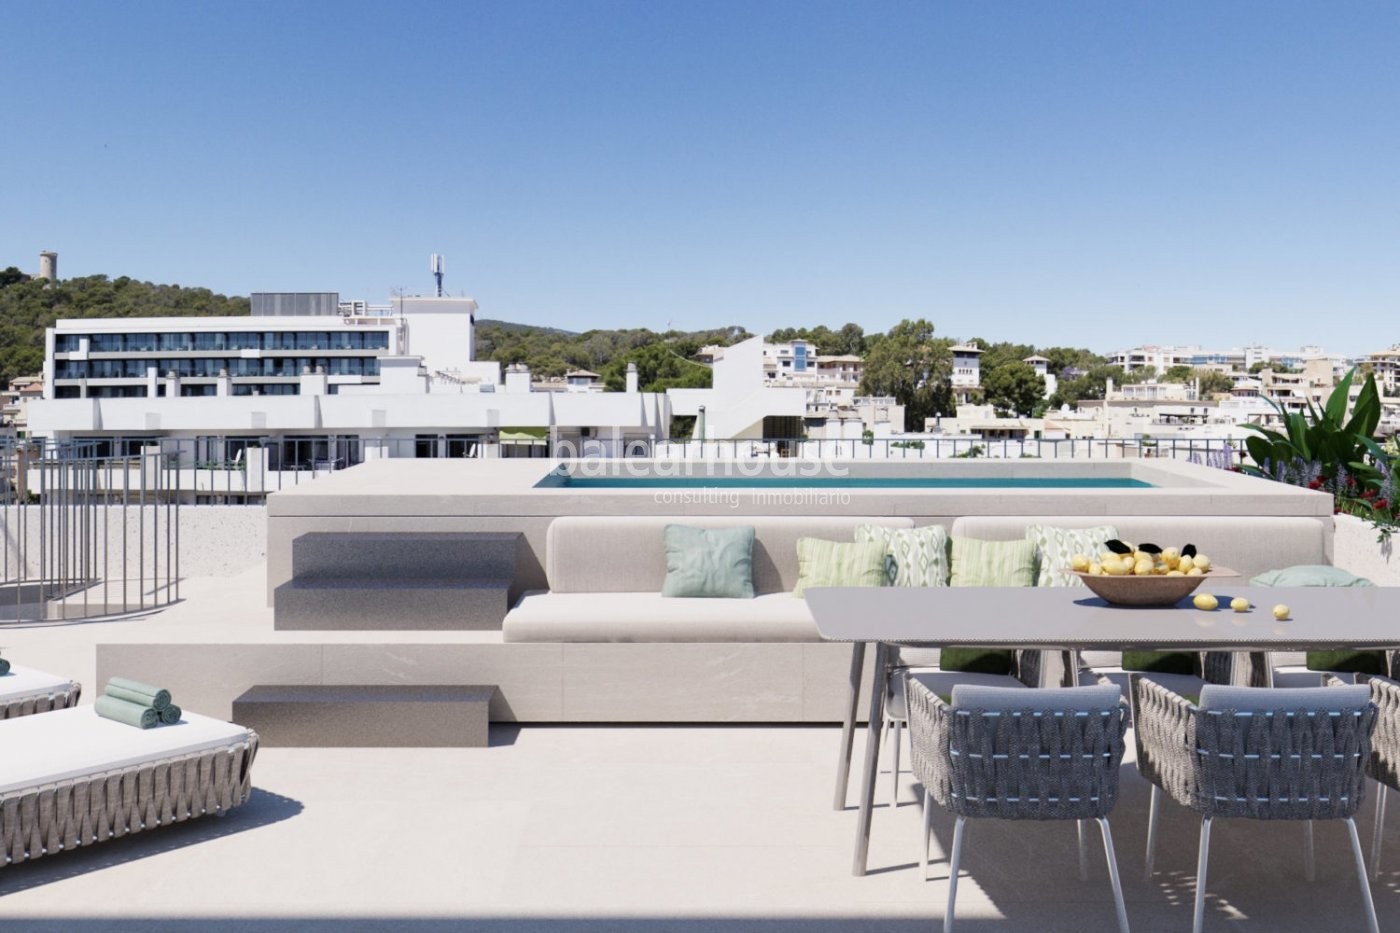 Fabelhaftes neu gebautes Penthouse mit Pool und Solarium in der Gegend von Son Armadans in Palma.